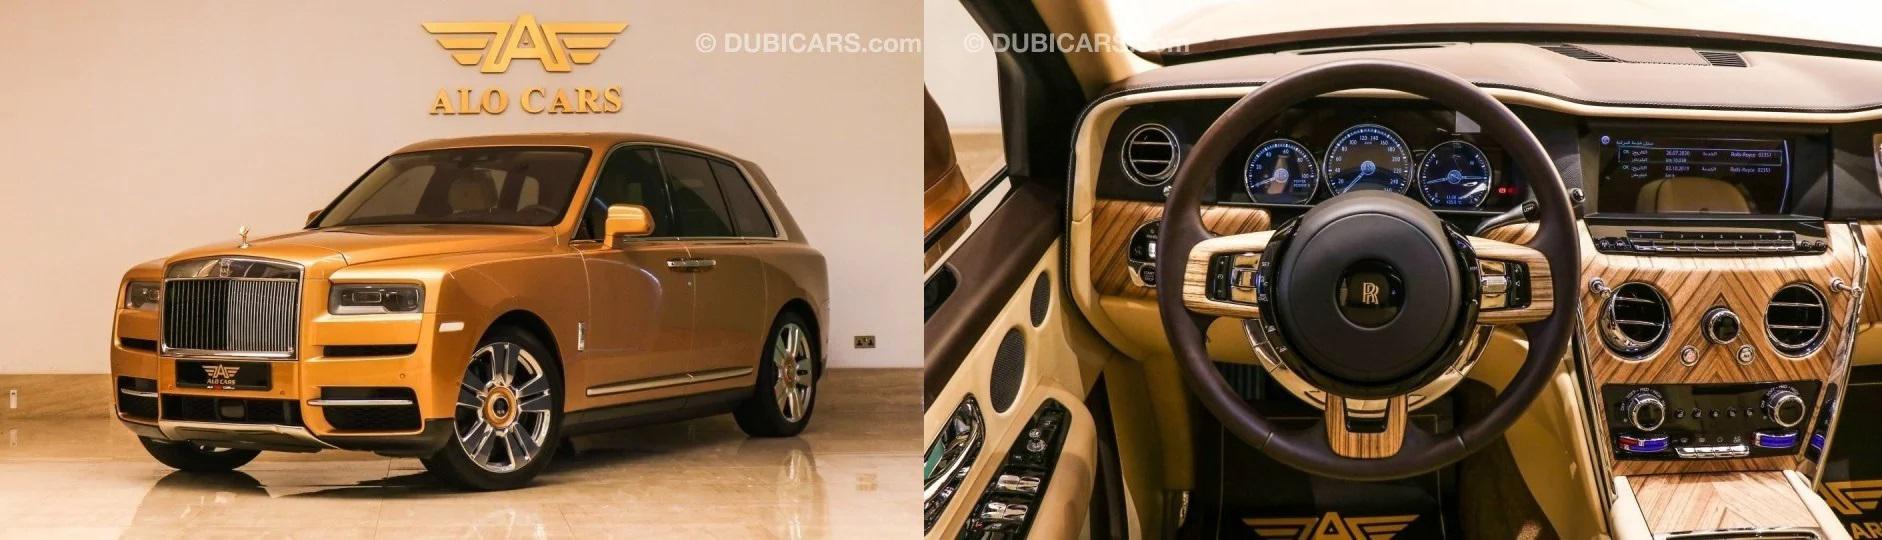 رولزرویس کولینان طلایی رنگ مدل 2020 در دبی